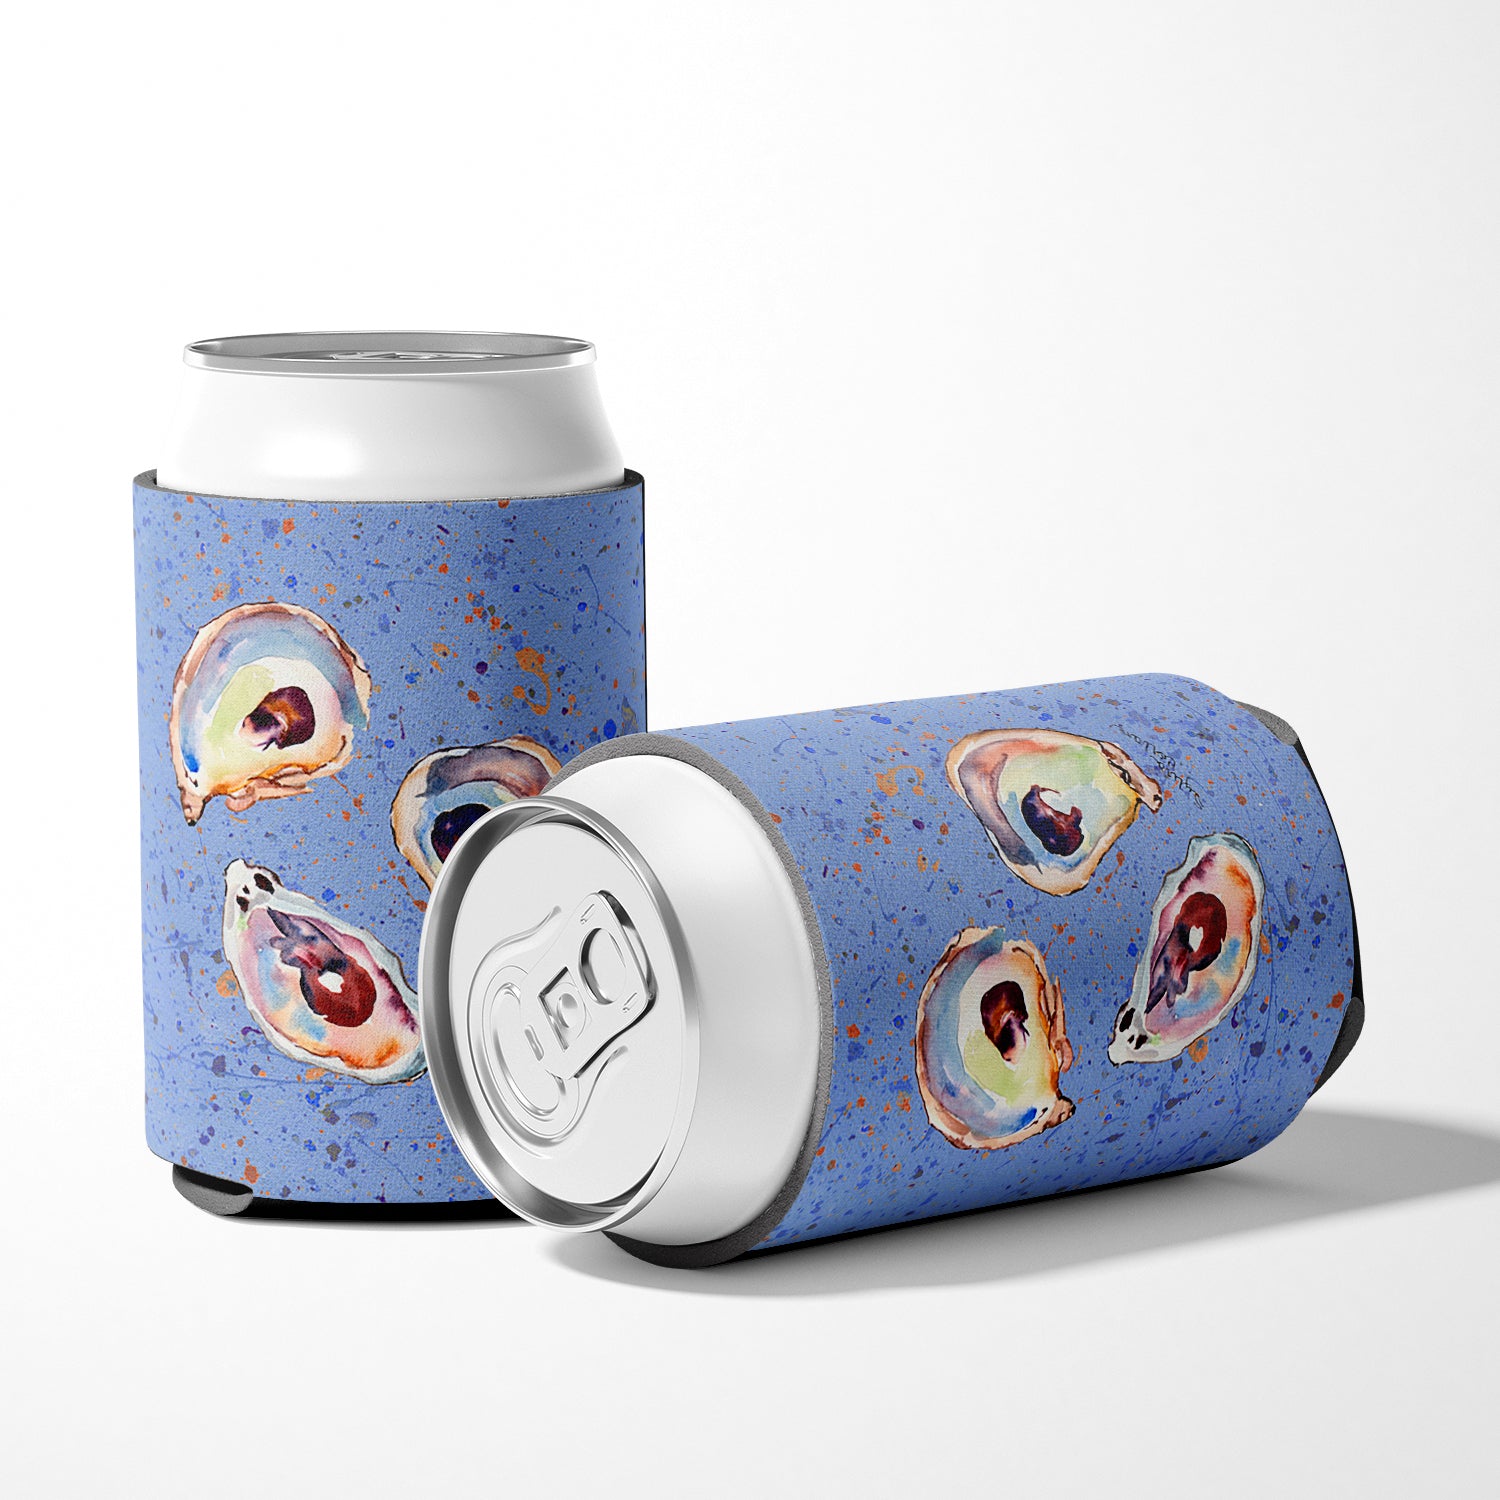 Oyster on blue Can or Bottle Beverage Insulator Hugger